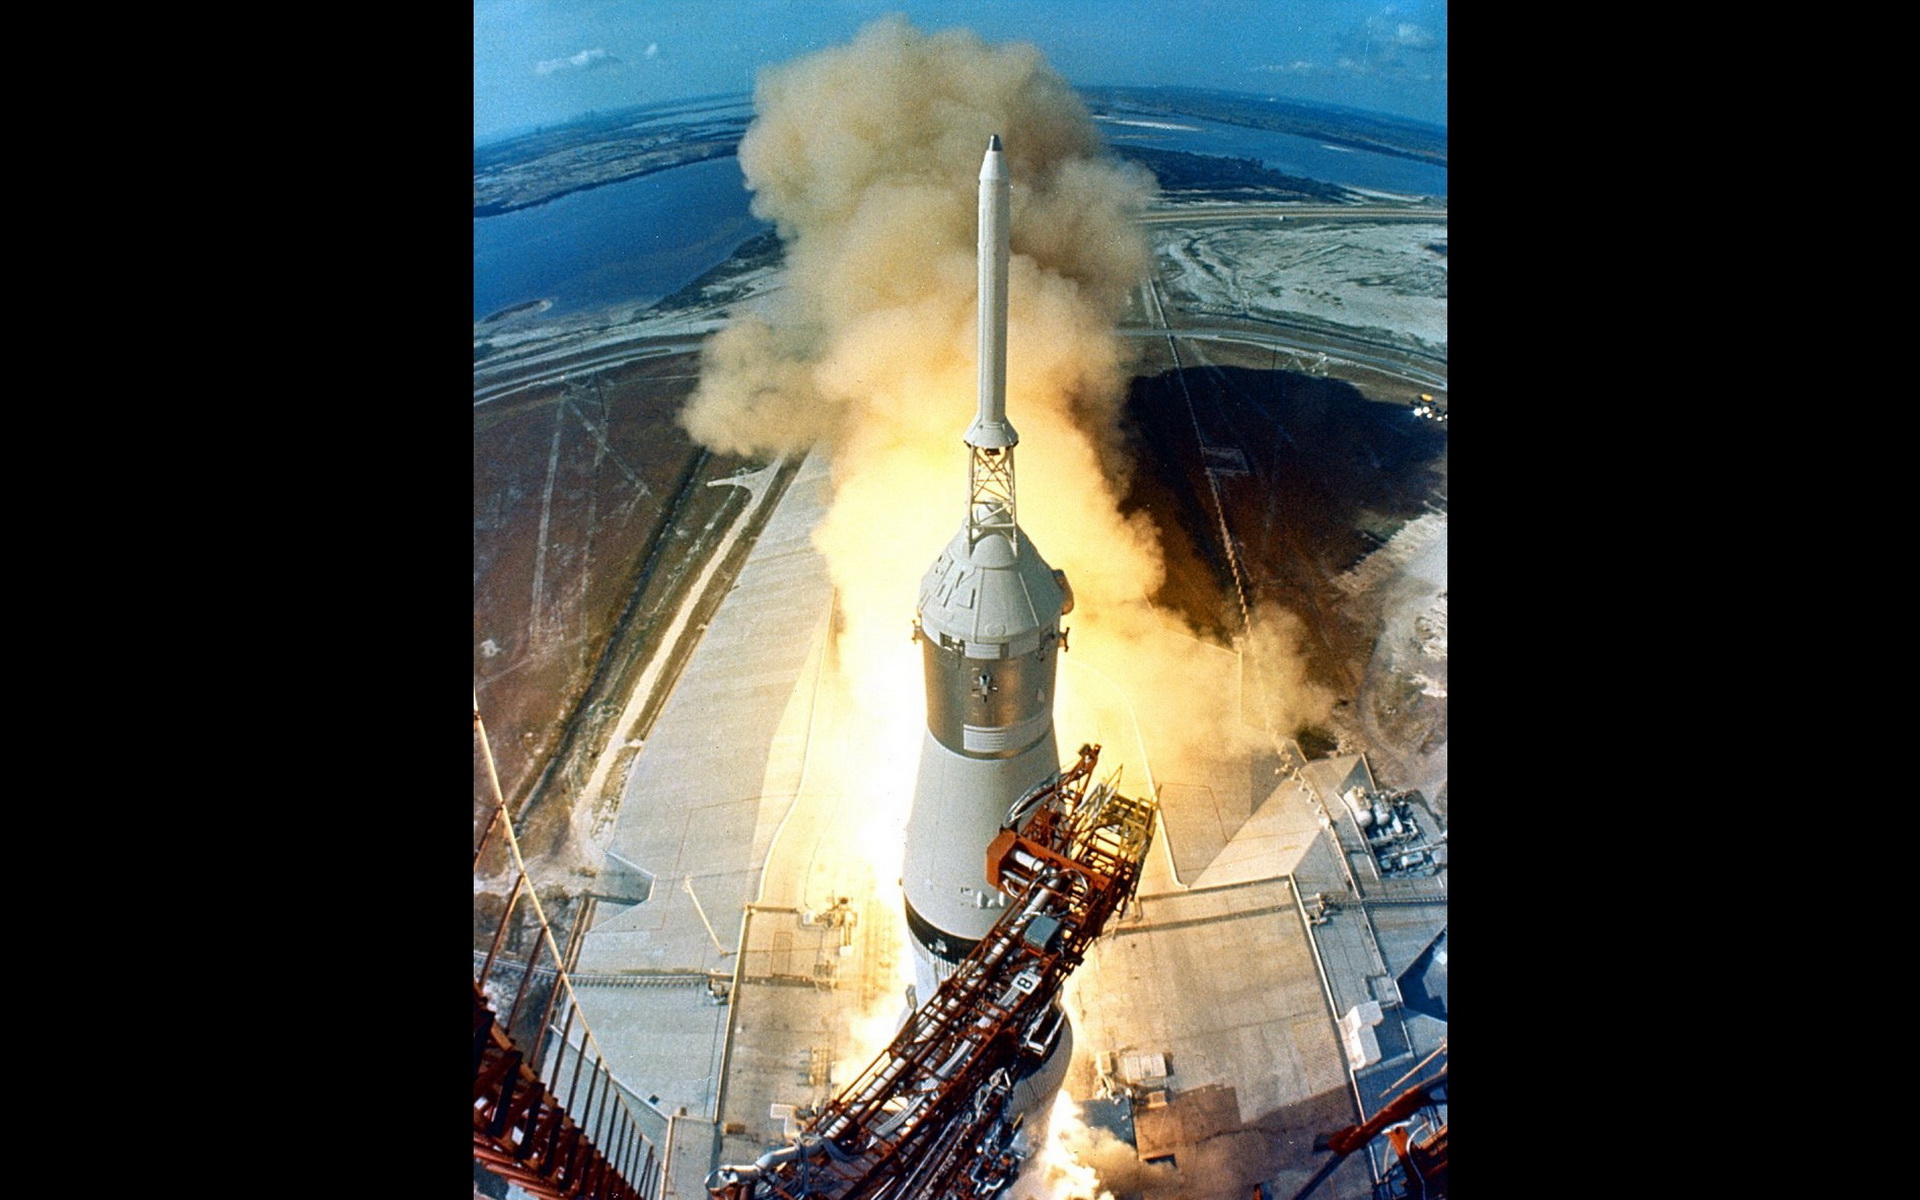 壁纸1920x1200阿波罗11 Apollo 11 珍贵照片壁纸 壁纸38壁纸 阿波罗11 （Apo壁纸 阿波罗11 （Apo图片 阿波罗11 （Apo素材 风景壁纸 风景图库 风景图片素材桌面壁纸